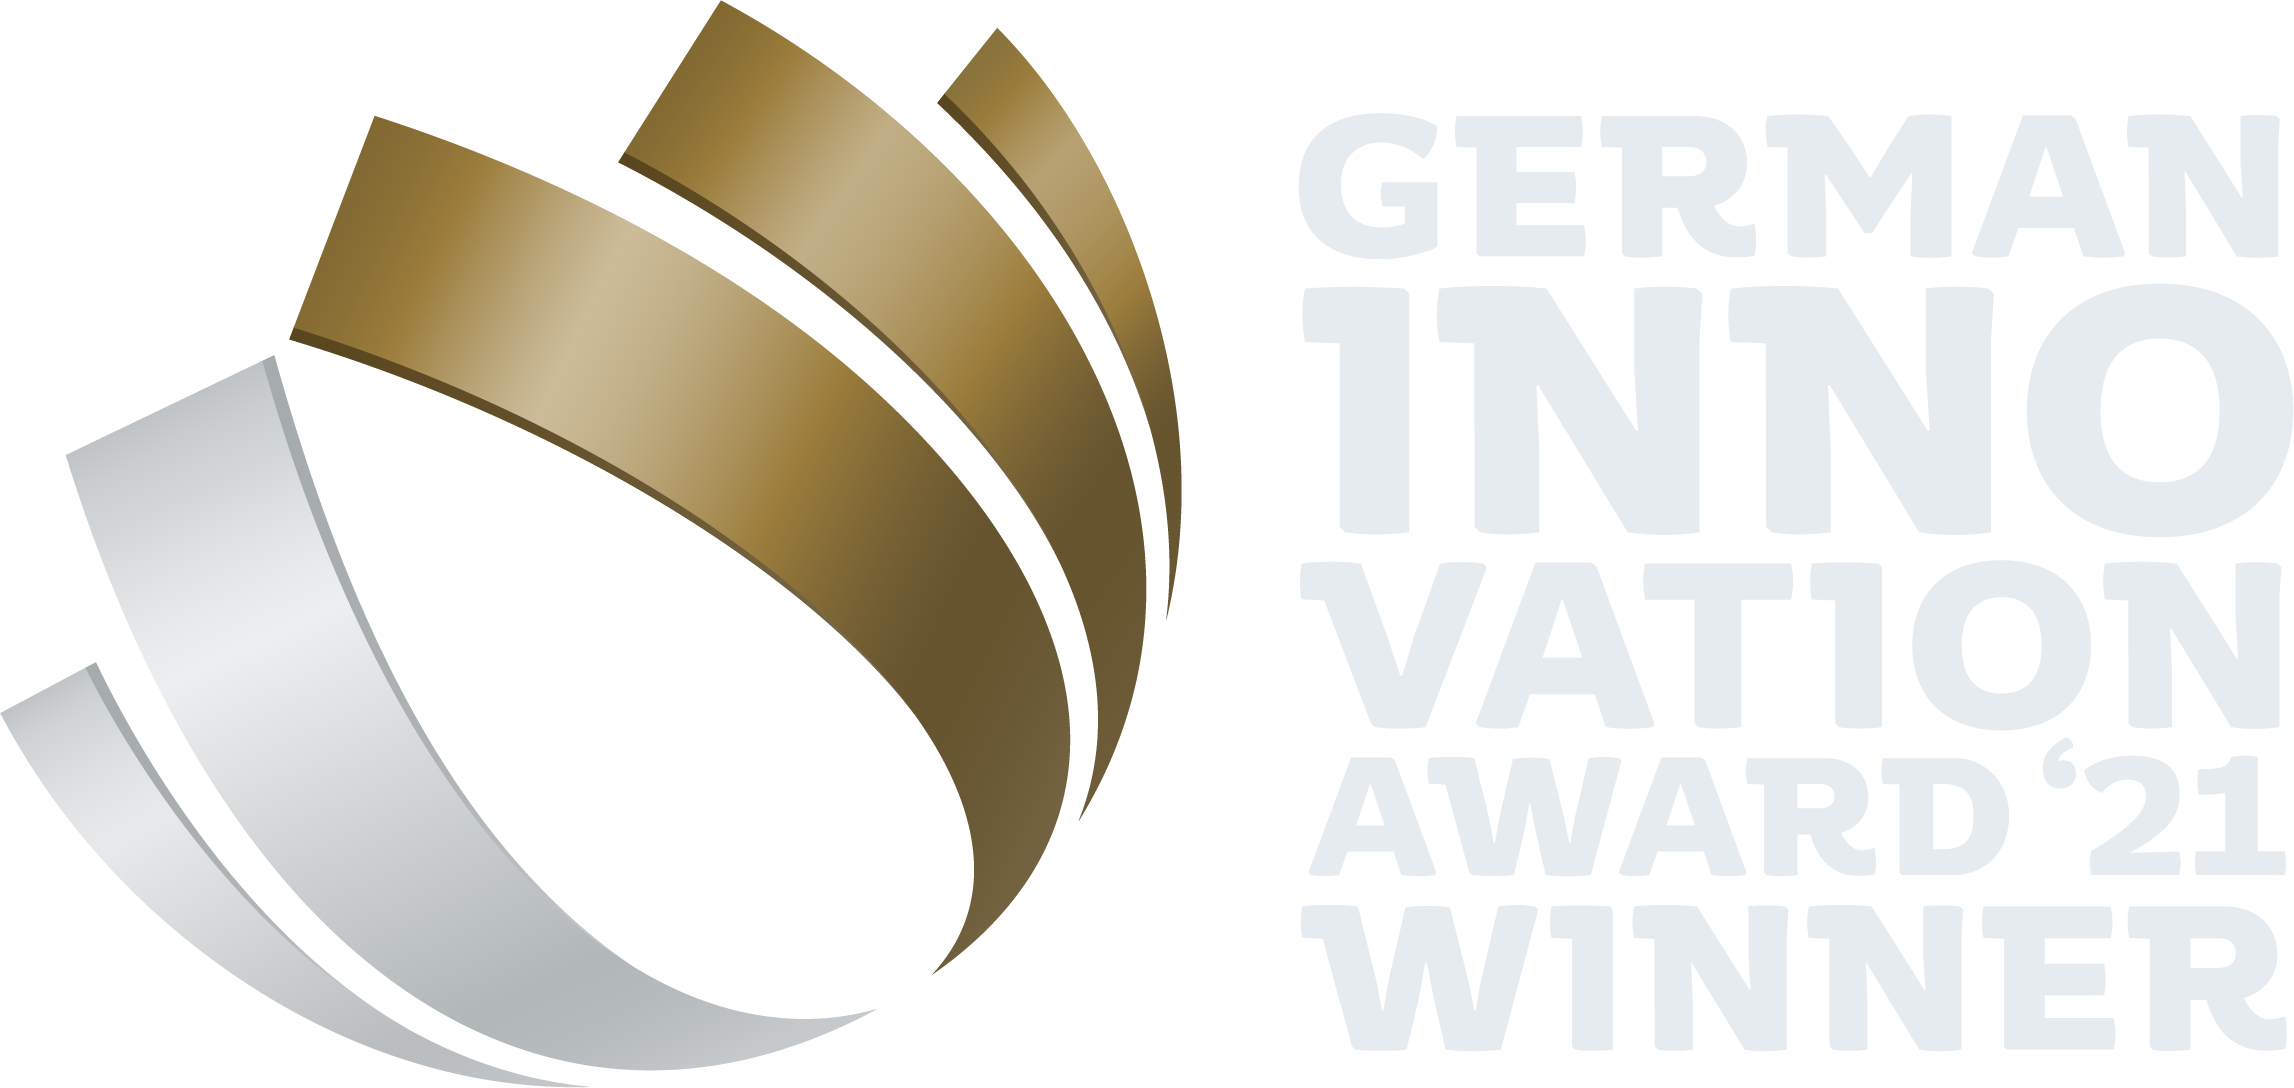 German innovation award 2021